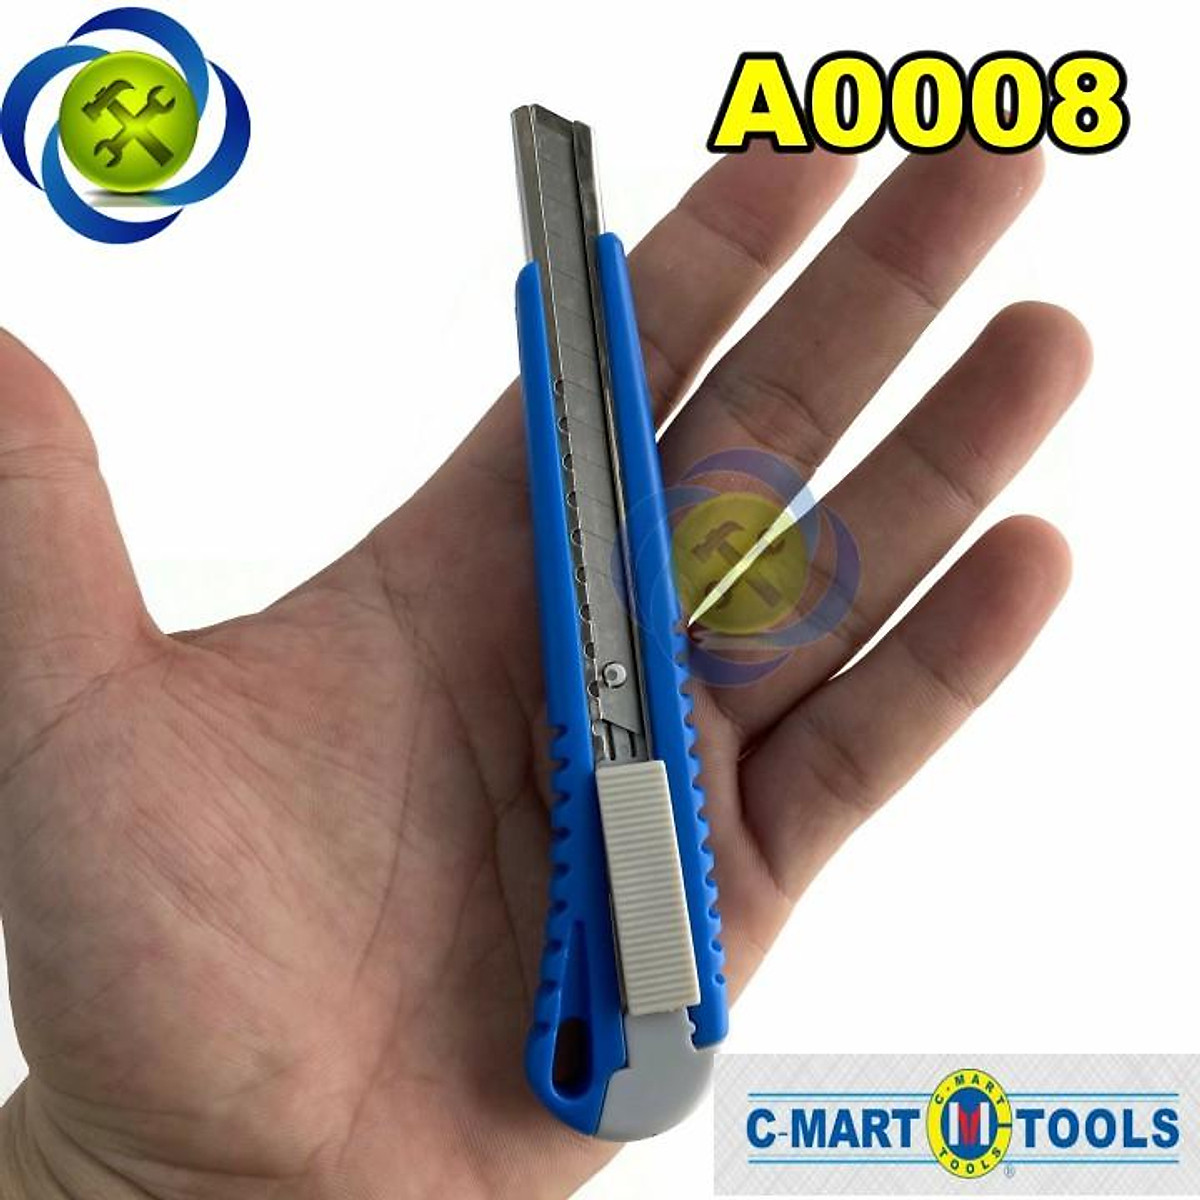 Dao rọc giấy C-Mart A0008 cán nhựa loại lưỡi 9mm - Kéo - Dao Rọc Giấy